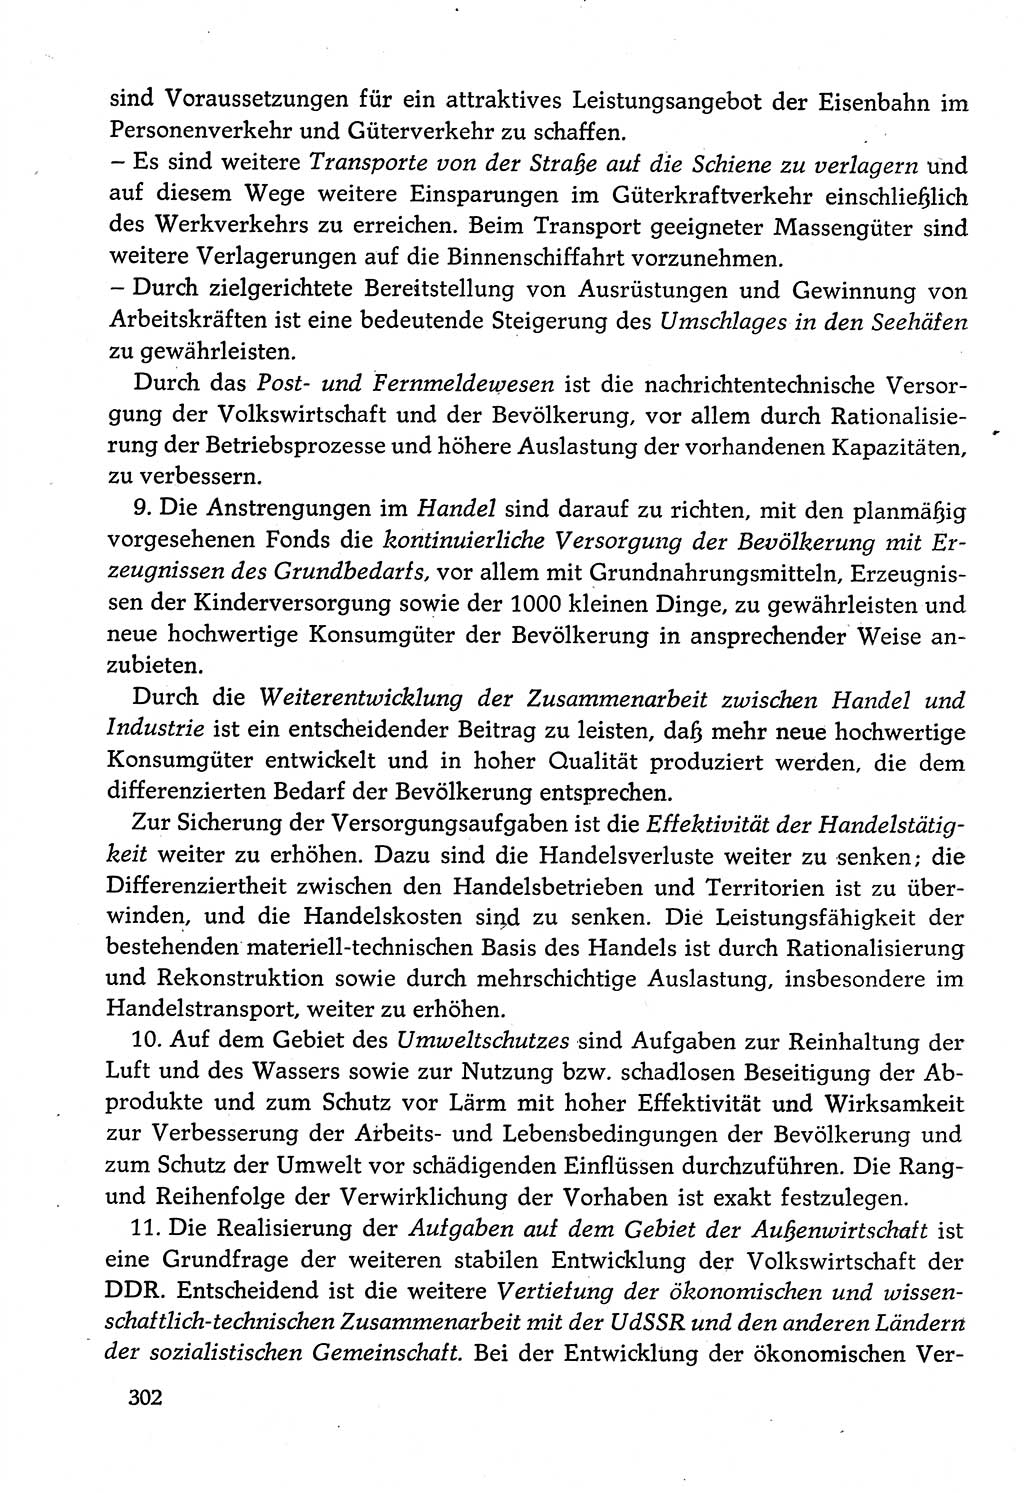 Dokumente der Sozialistischen Einheitspartei Deutschlands (SED) [Deutsche Demokratische Republik (DDR)] 1982-1983, Seite 302 (Dok. SED DDR 1982-1983, S. 302)